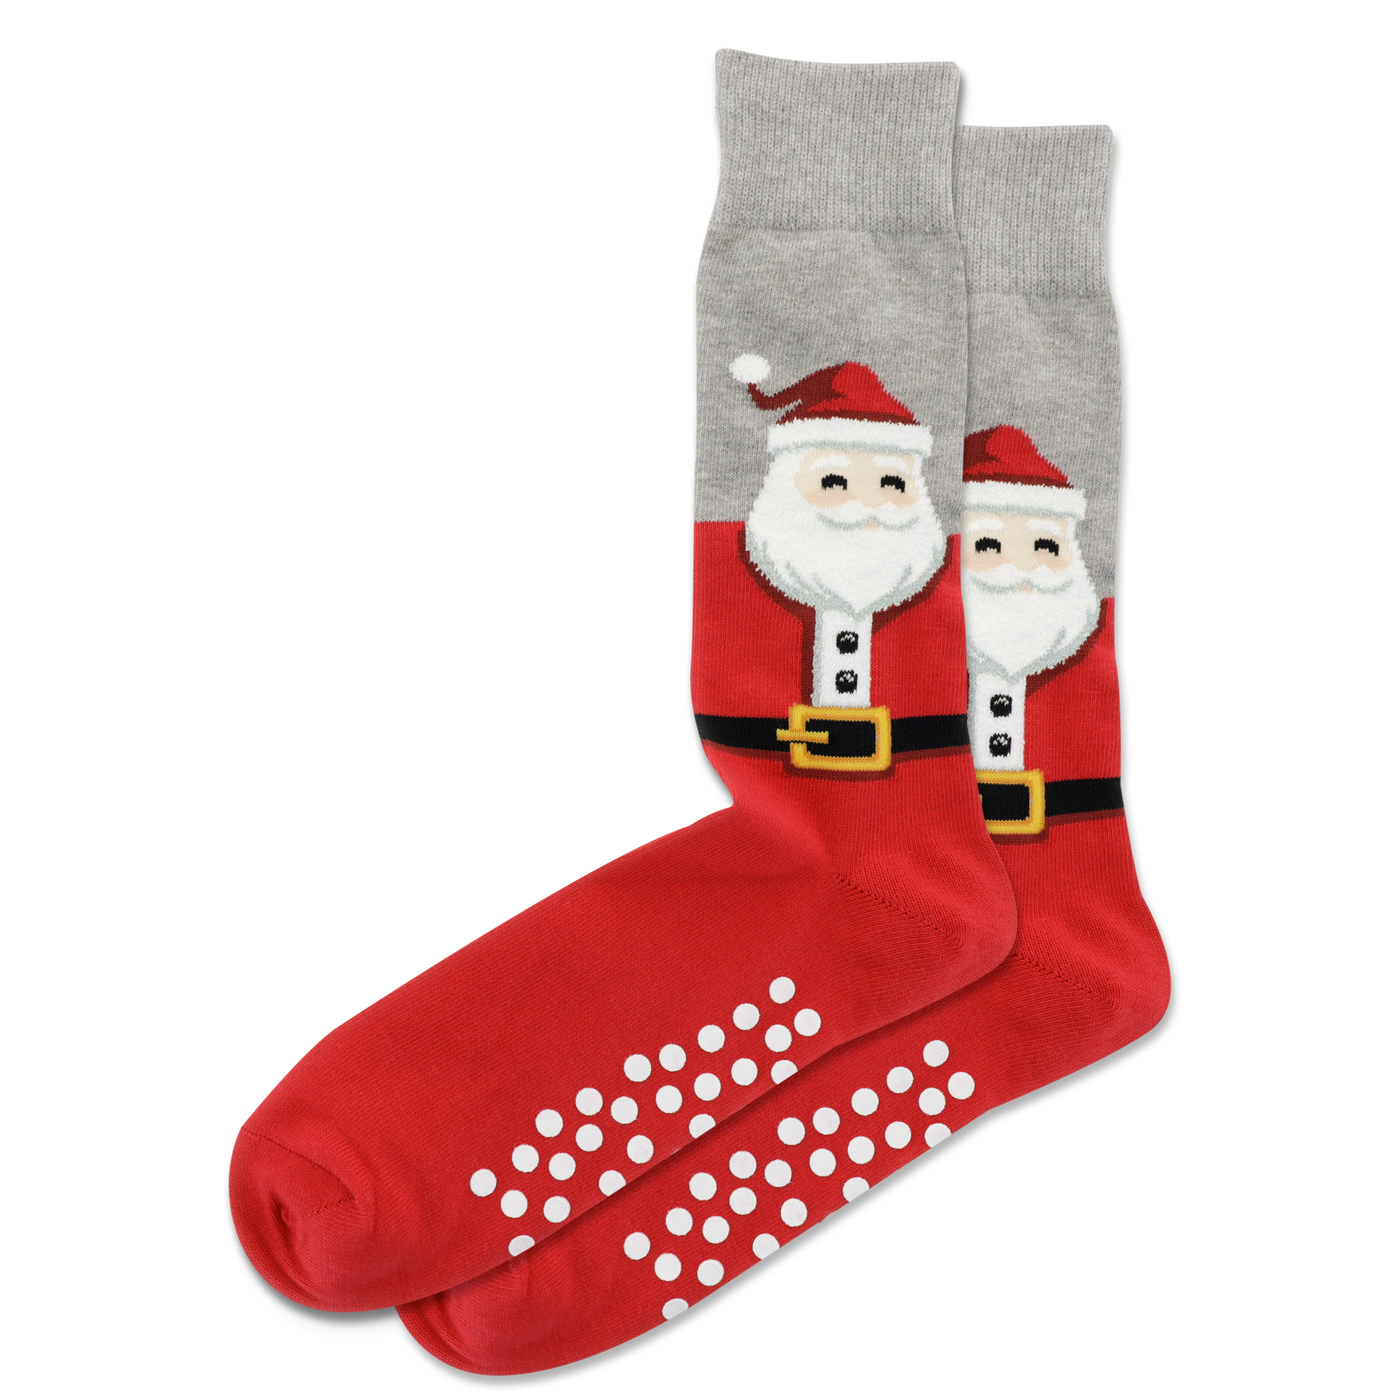 "Fuzzy Santa" Crew Socks by Hot Sox